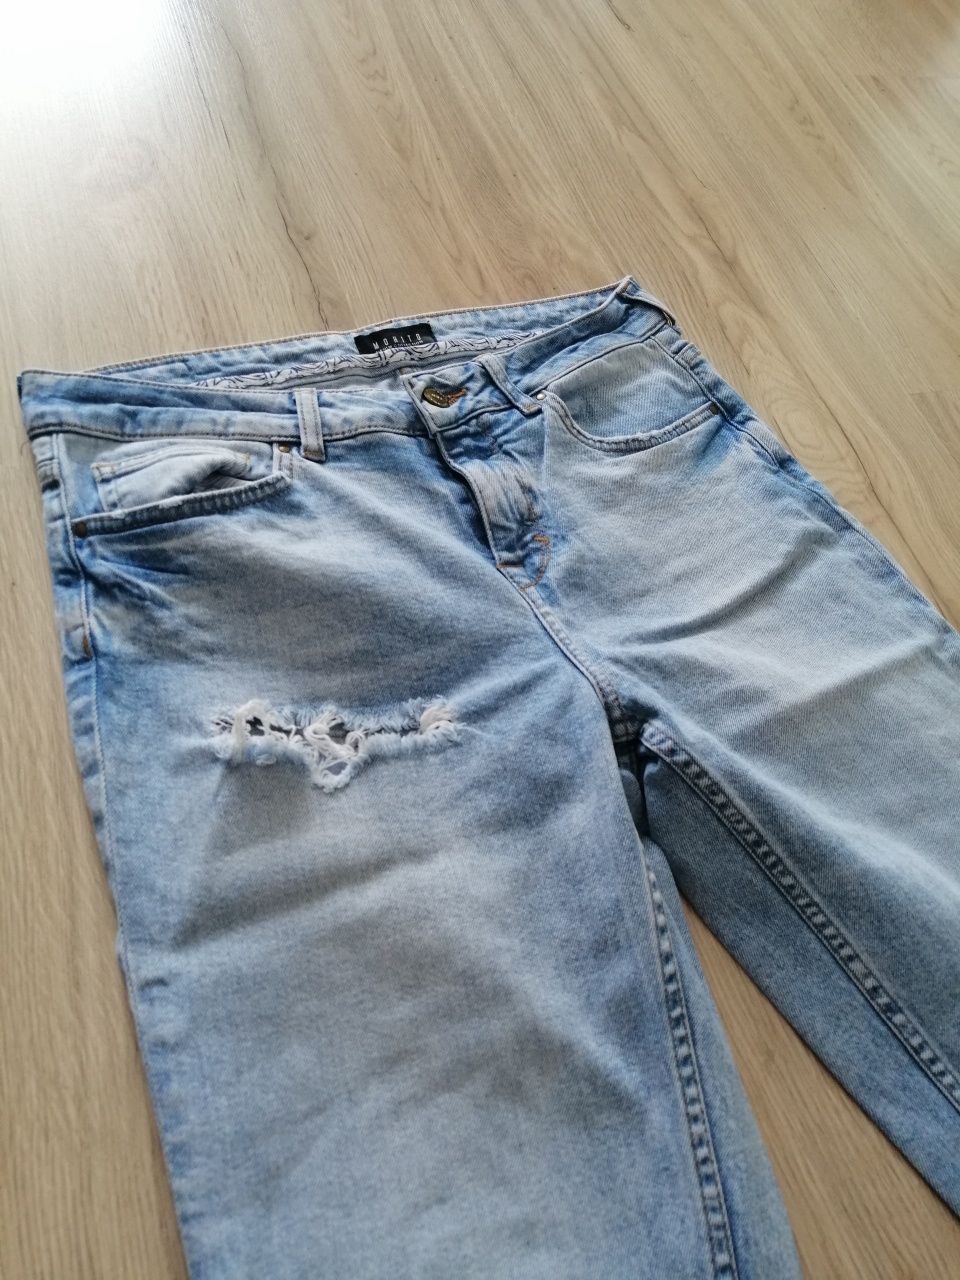 Jasne jeansy Mohito r 38